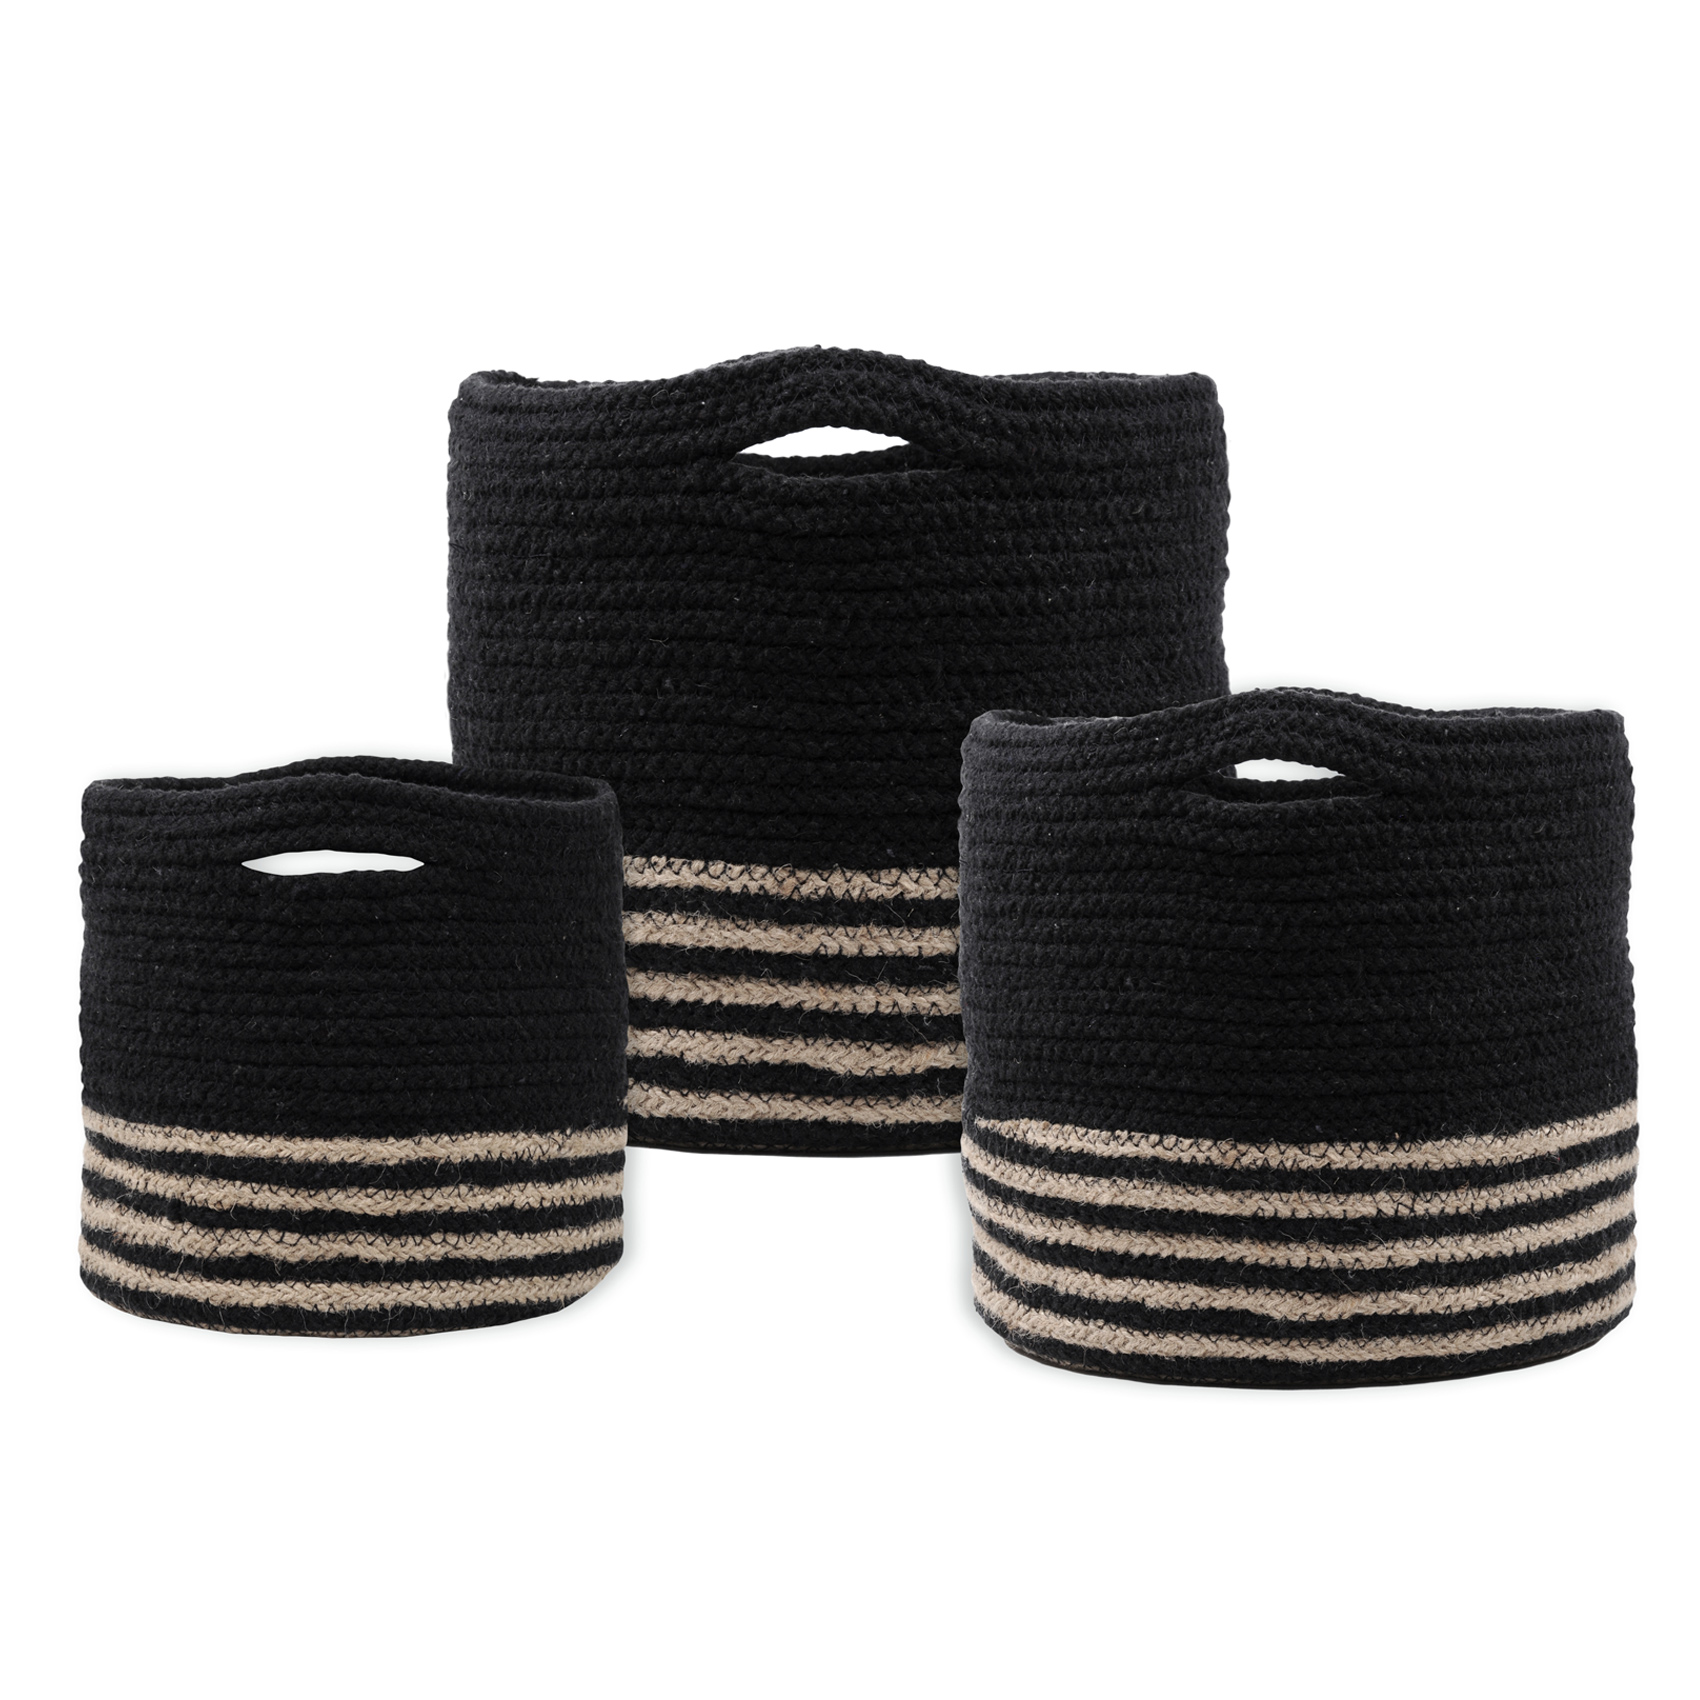 Set de 3 paniers ronds à anses coton noir